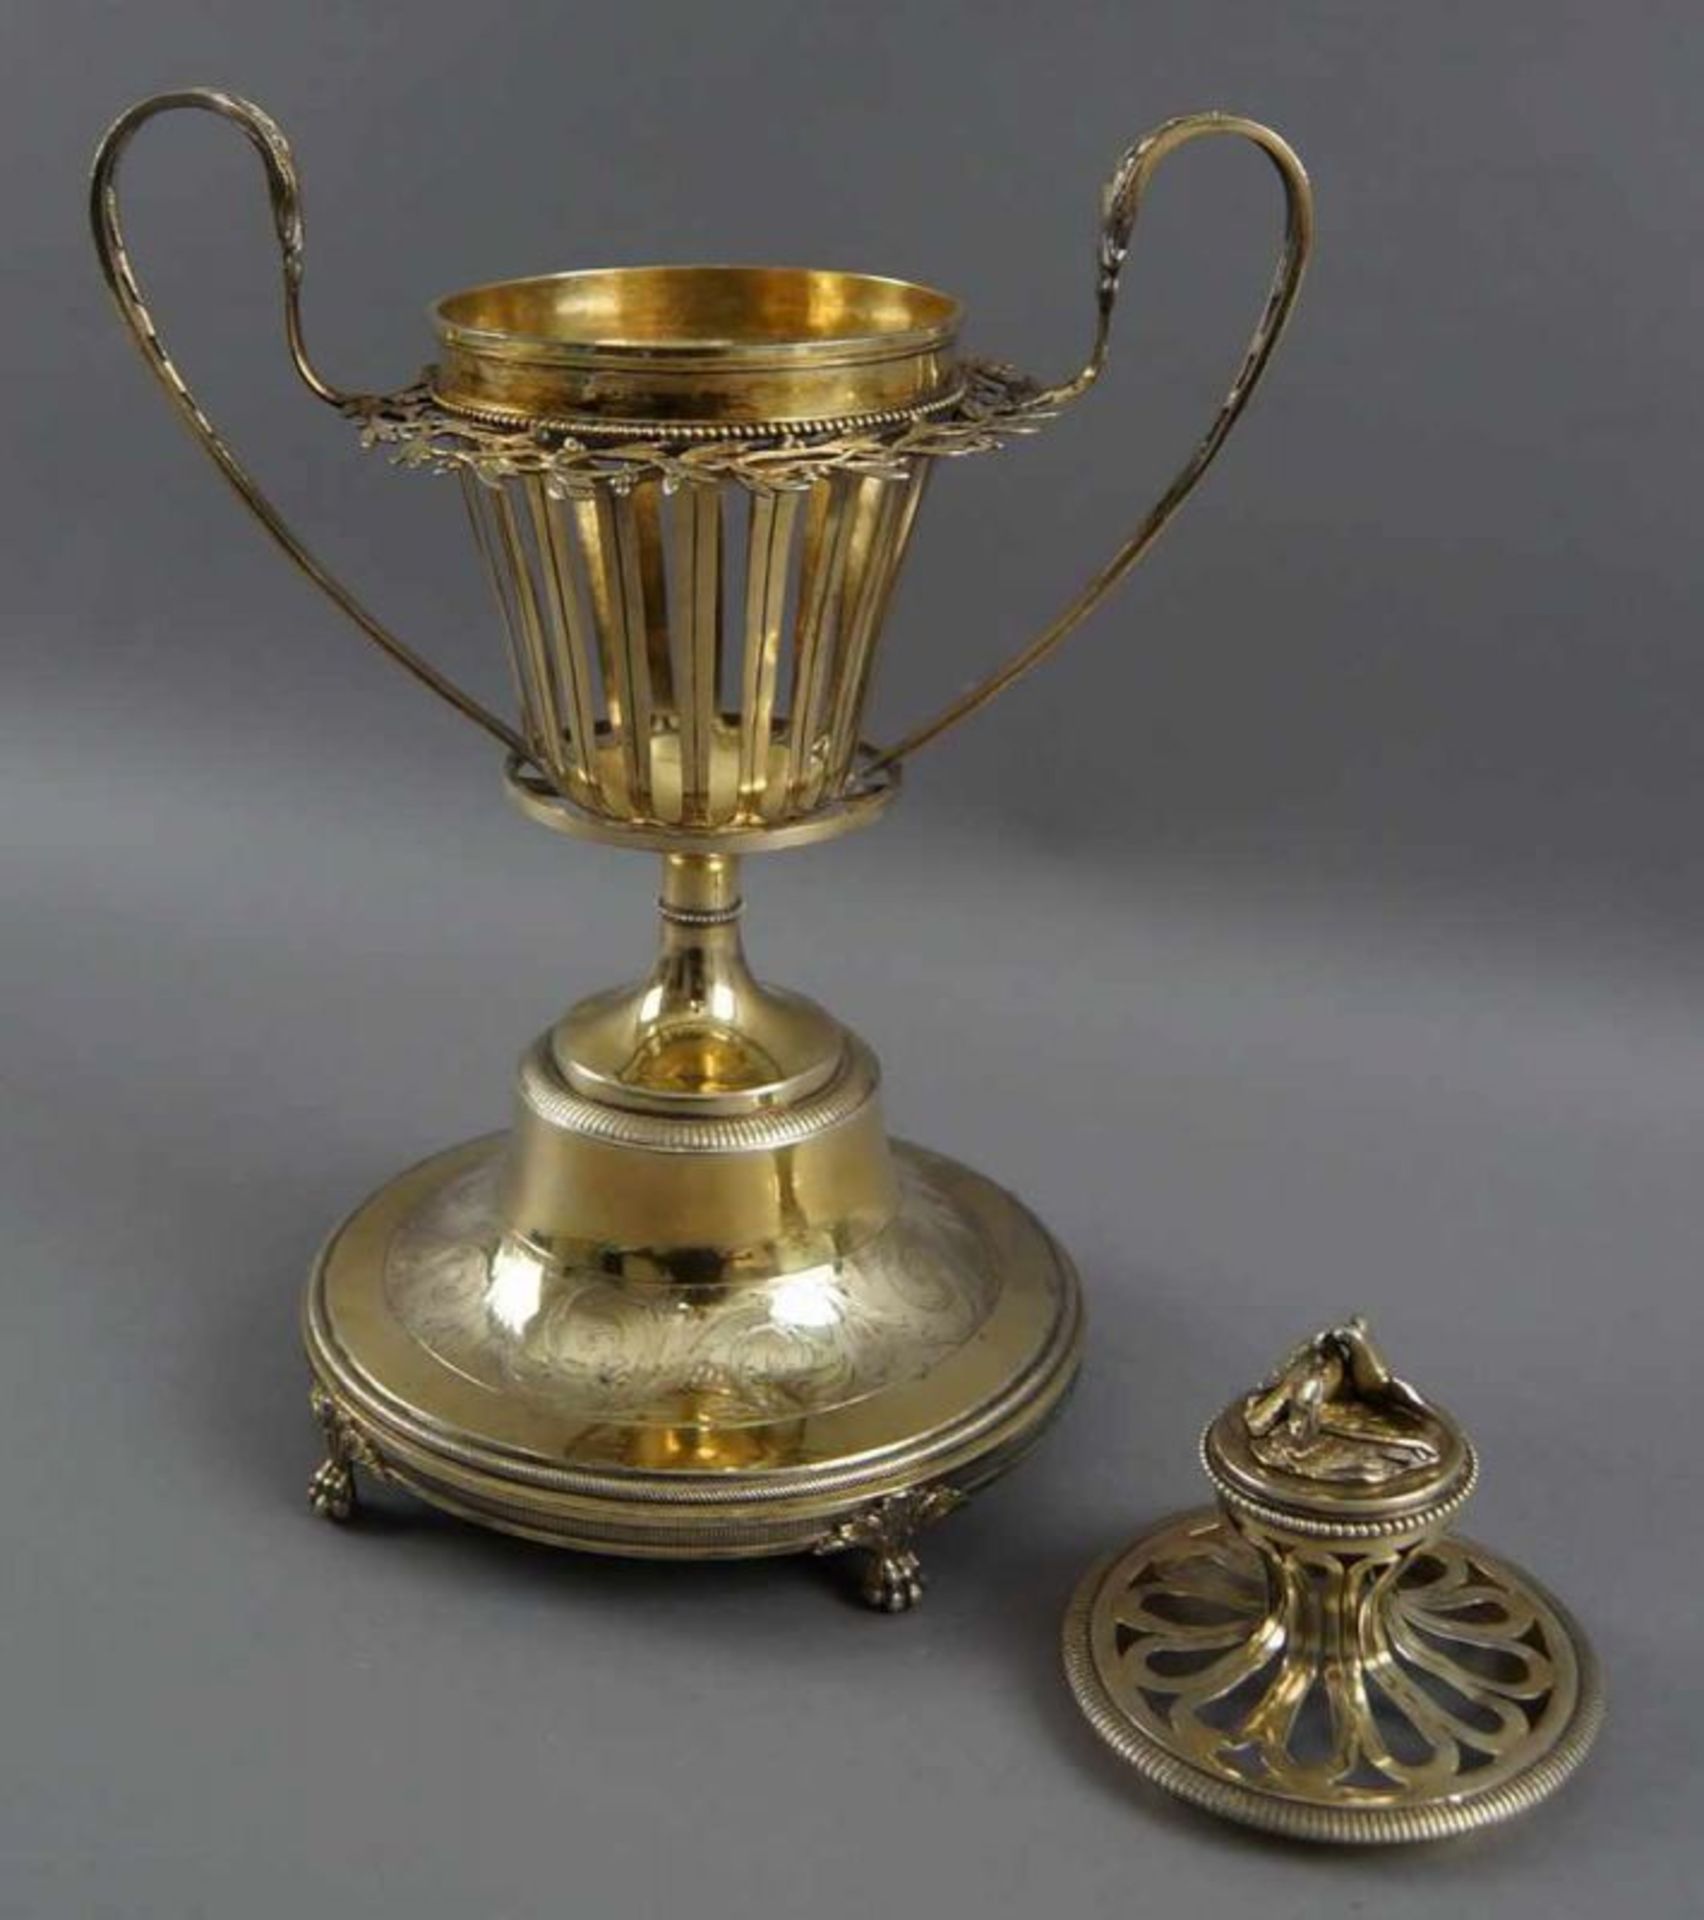 Herrschaftlicher Taufpokal (christening cup), durchbrochen gearbeitet, mehrfach gepunzt, datiert - Bild 4 aus 14